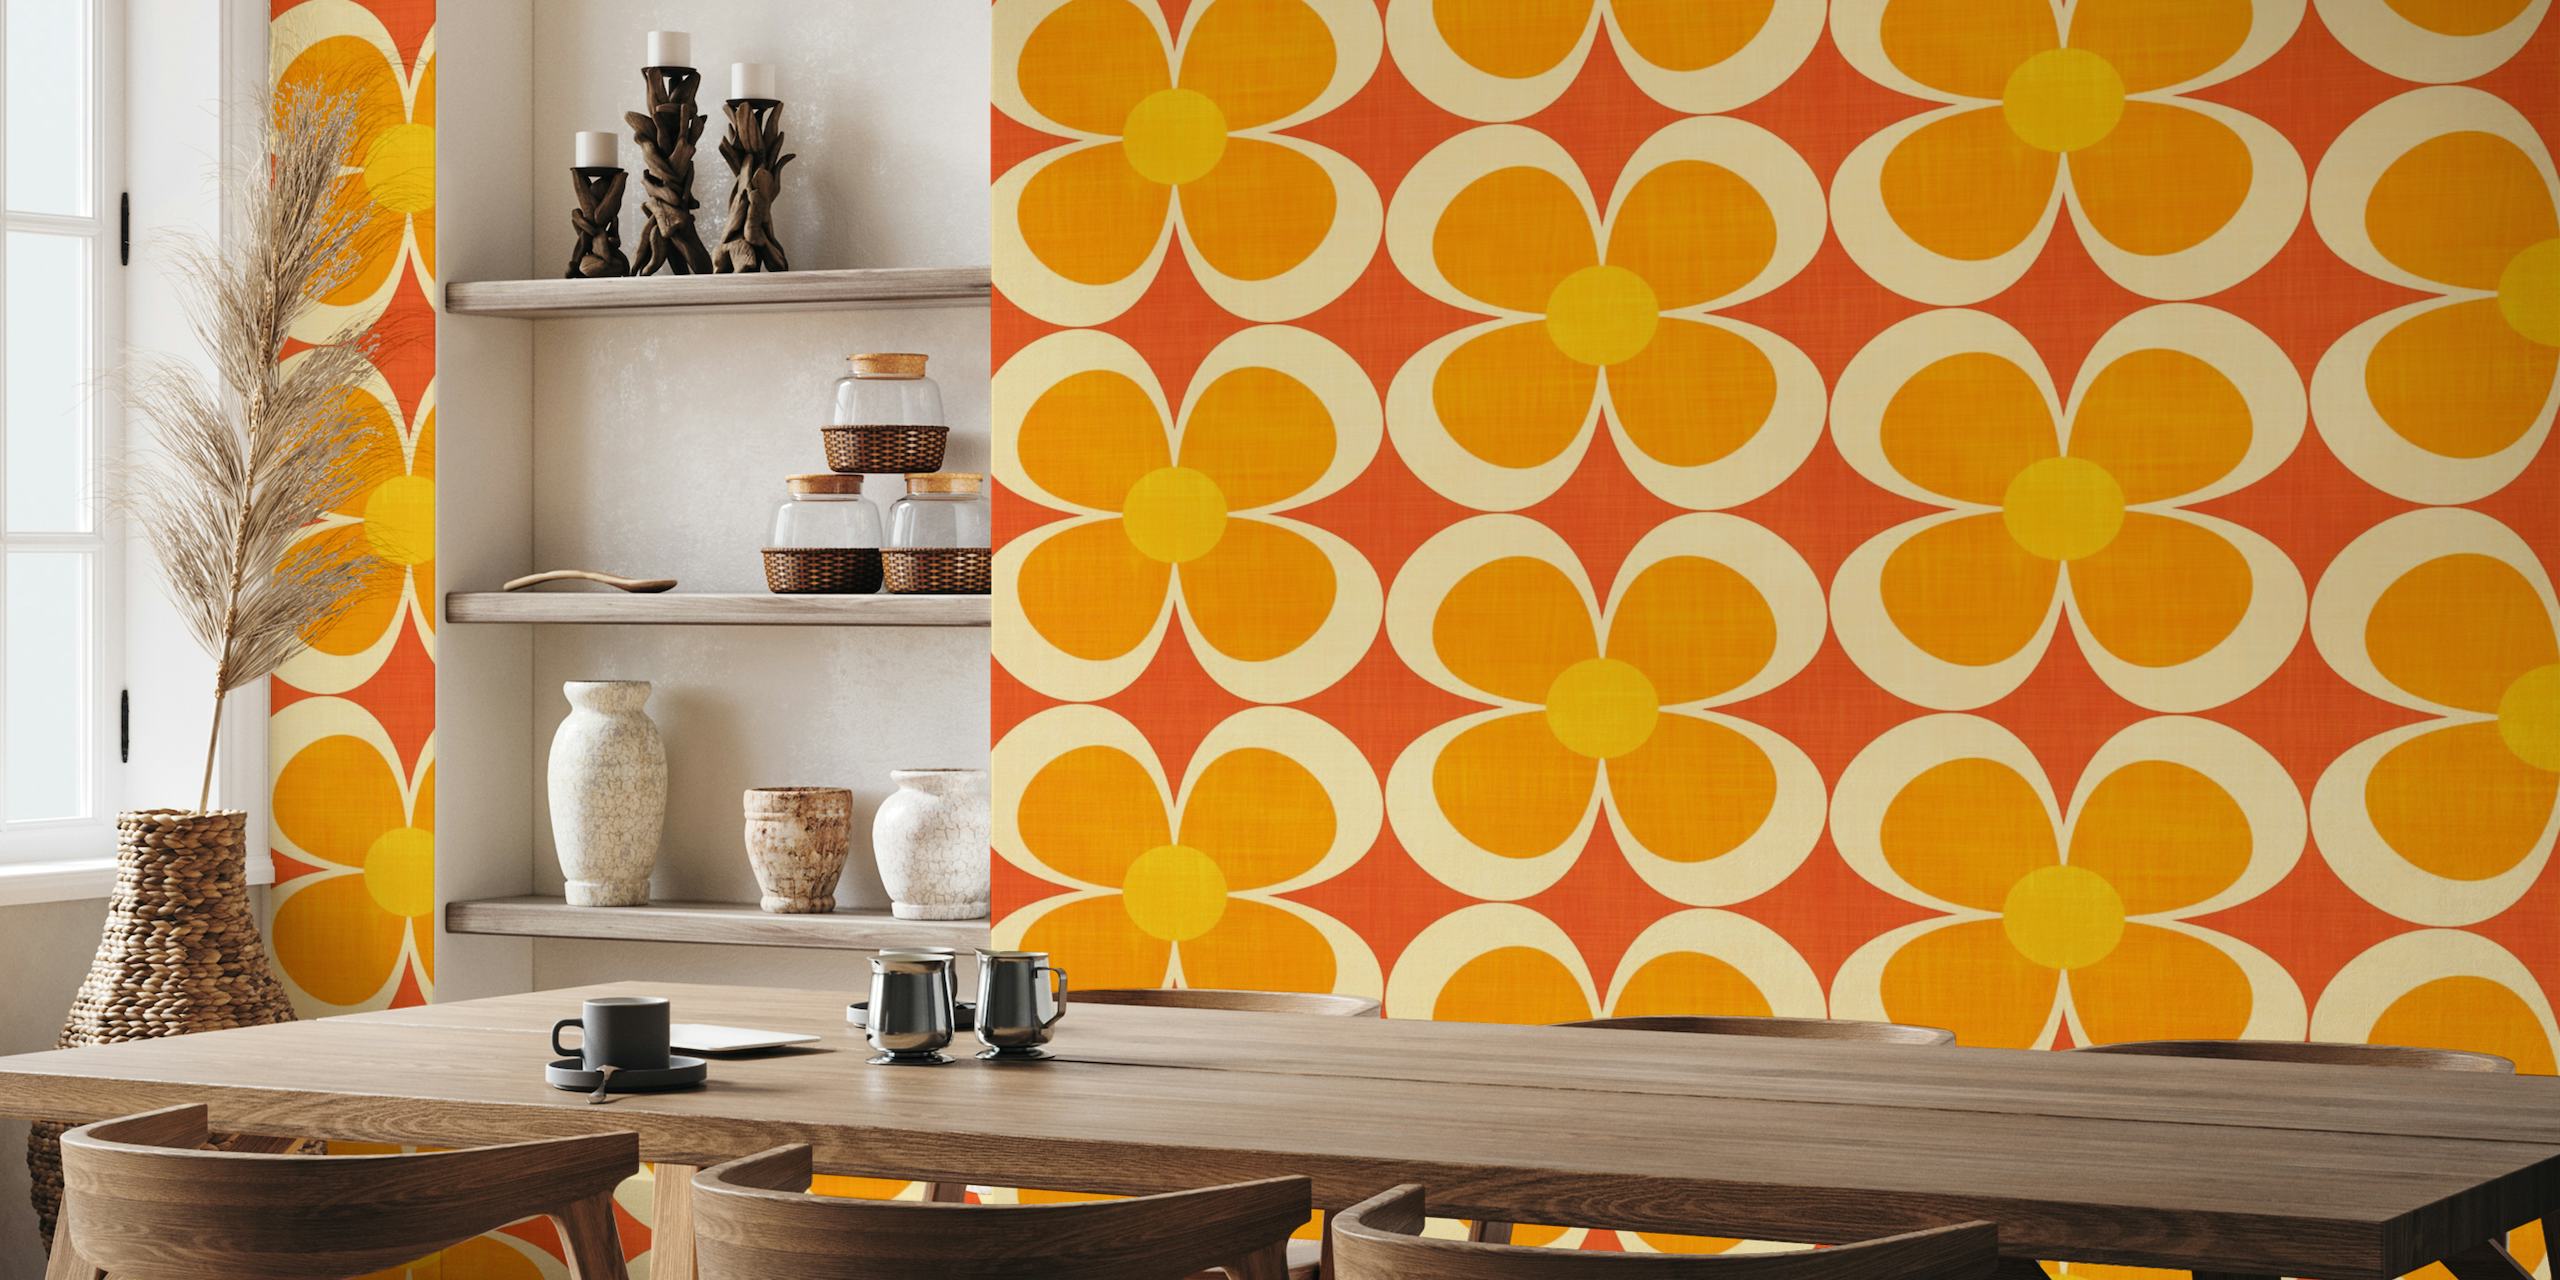 Mural de pared Groovy Geométrico Floral de inspiración retro en naranja, amarillo y rojo